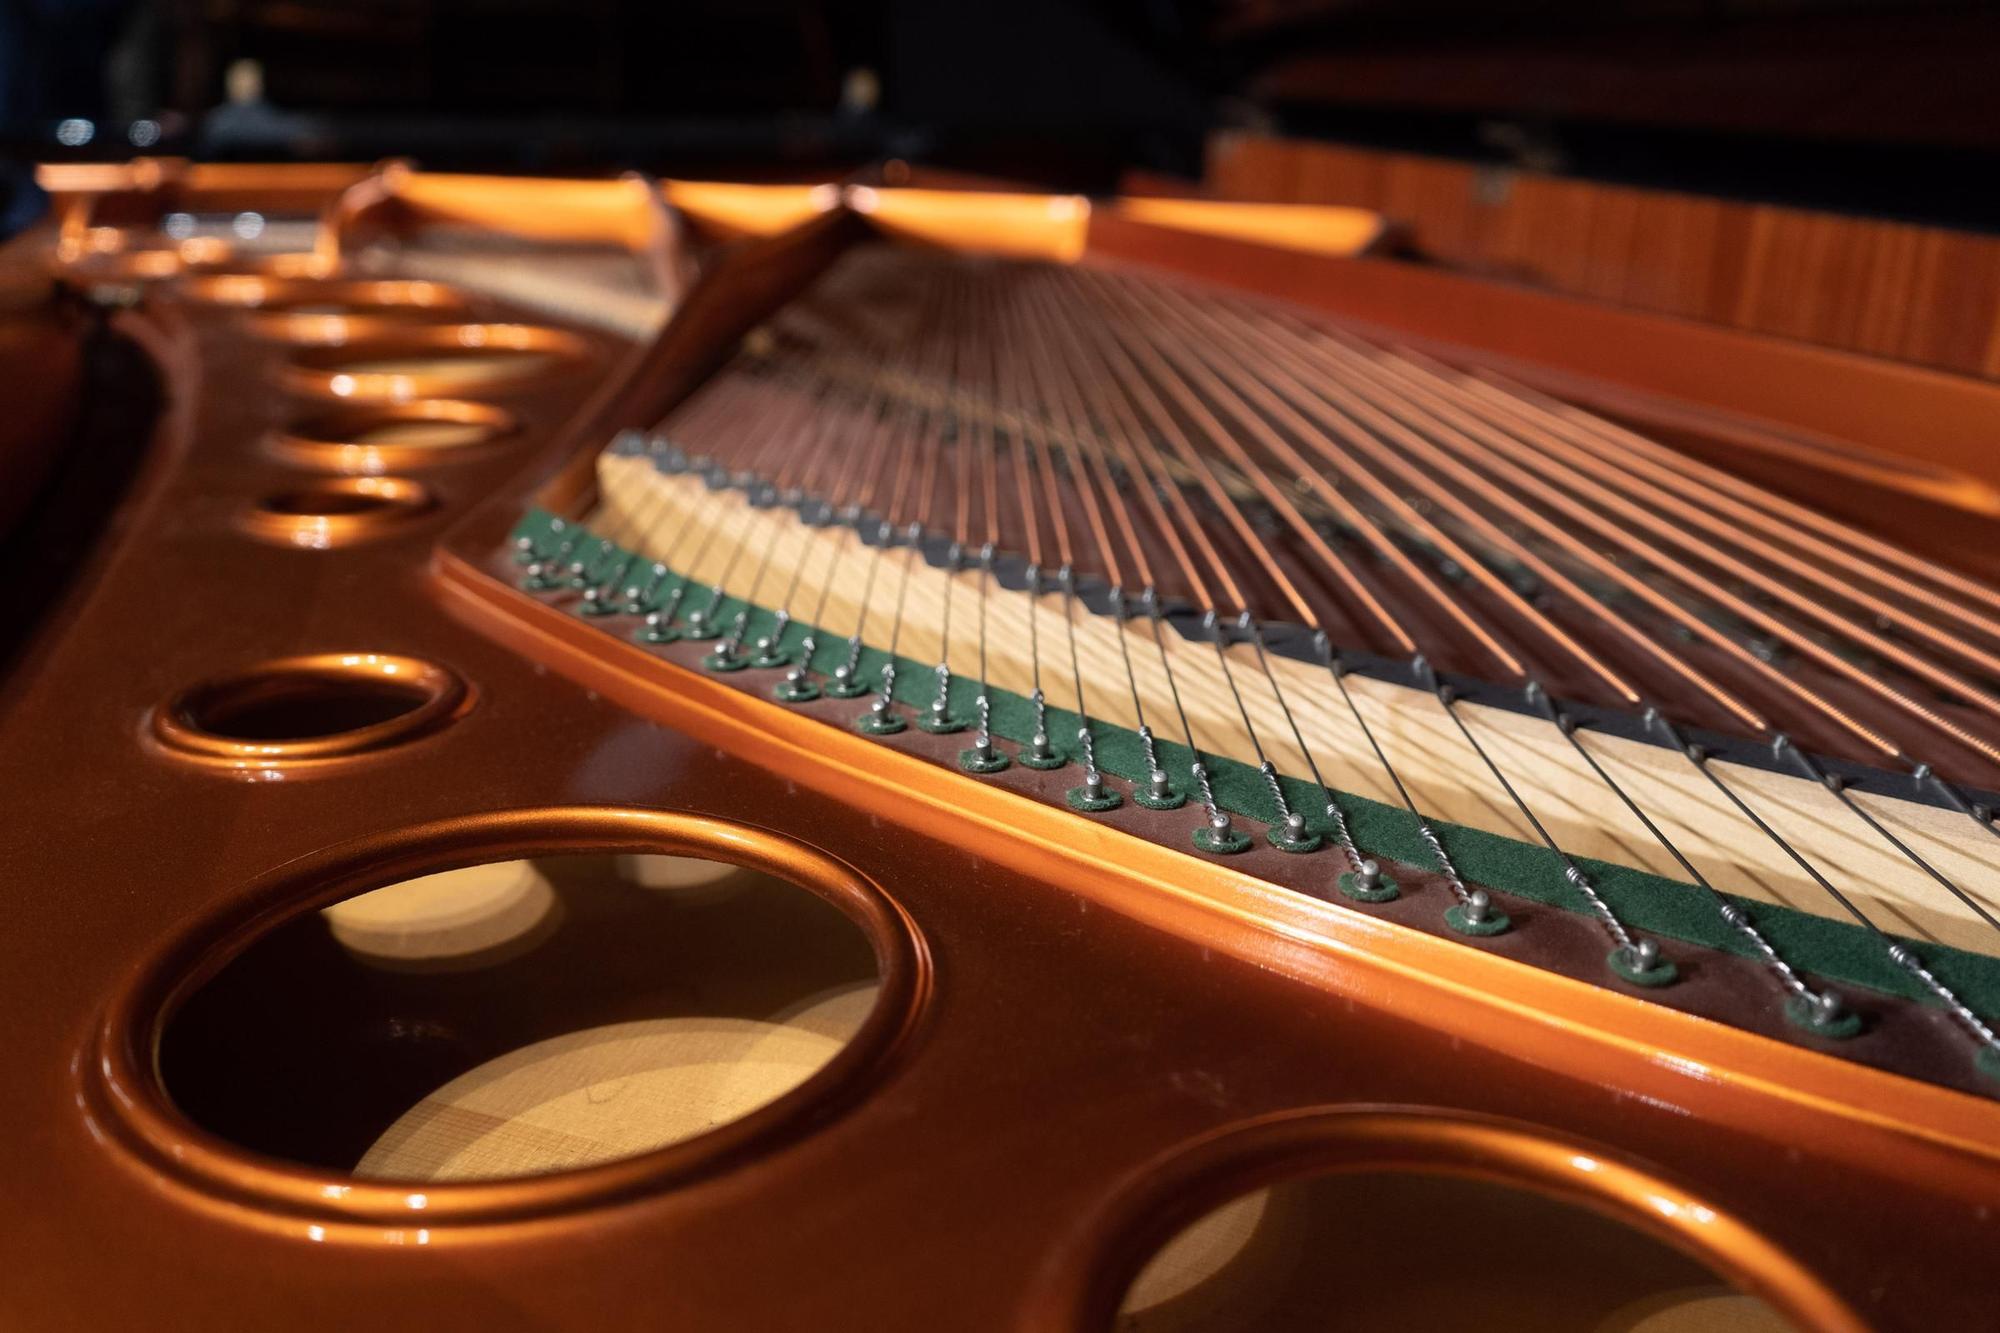 GALERÍA | Así es el nuevo piano que Fundos ha cedido al Ramos Carrión de Zamora